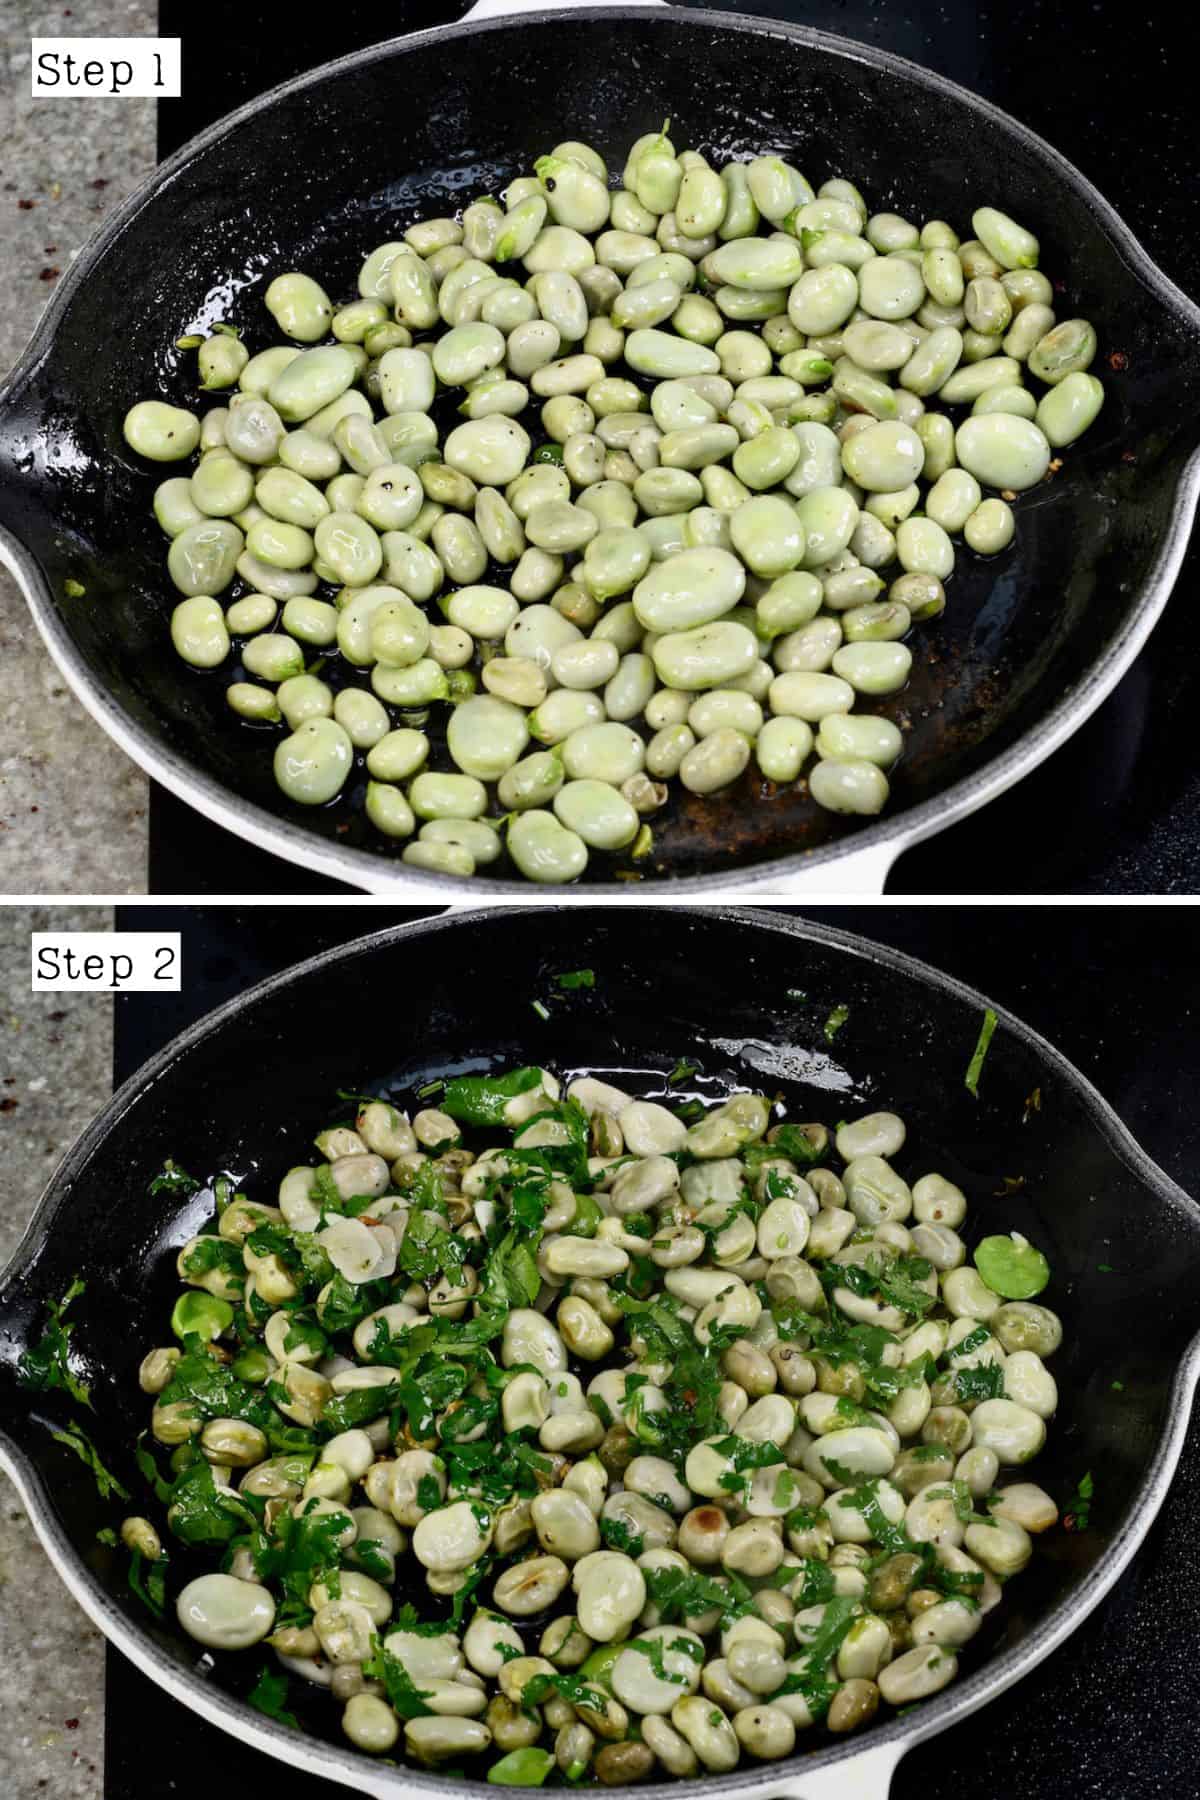 Steps for sautéing fava beans